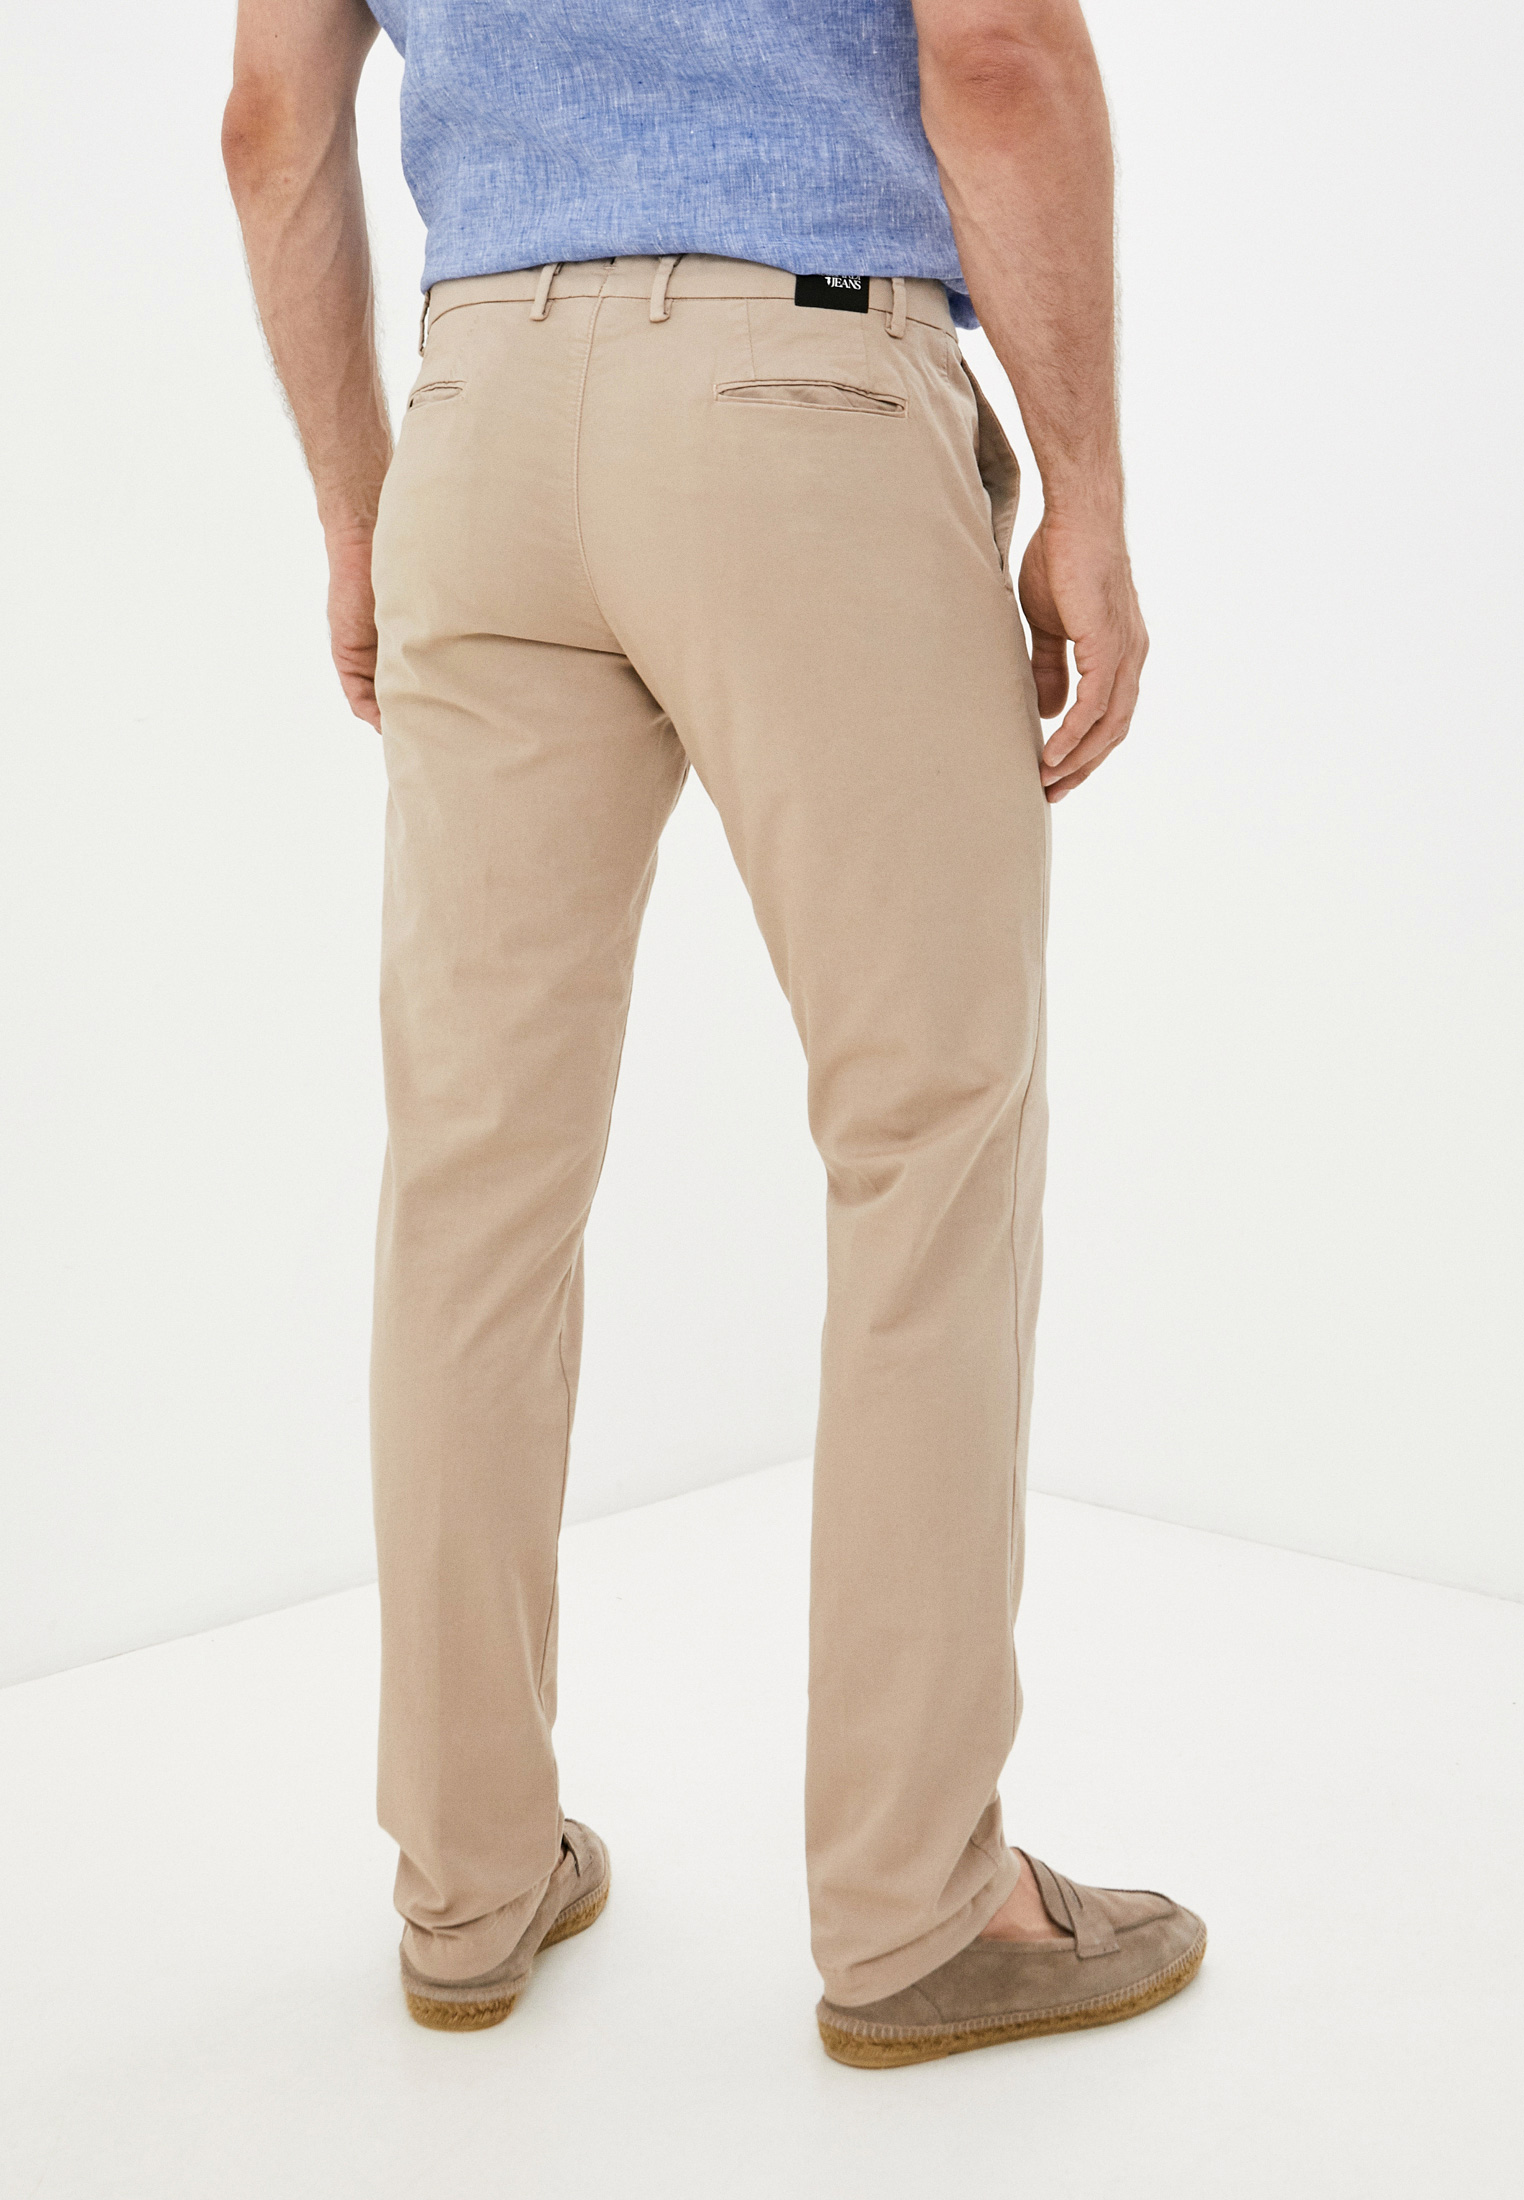 Мужские повседневные брюки Trussardi (Труссарди) 52P00000-1T002543-H-001: изображение 9